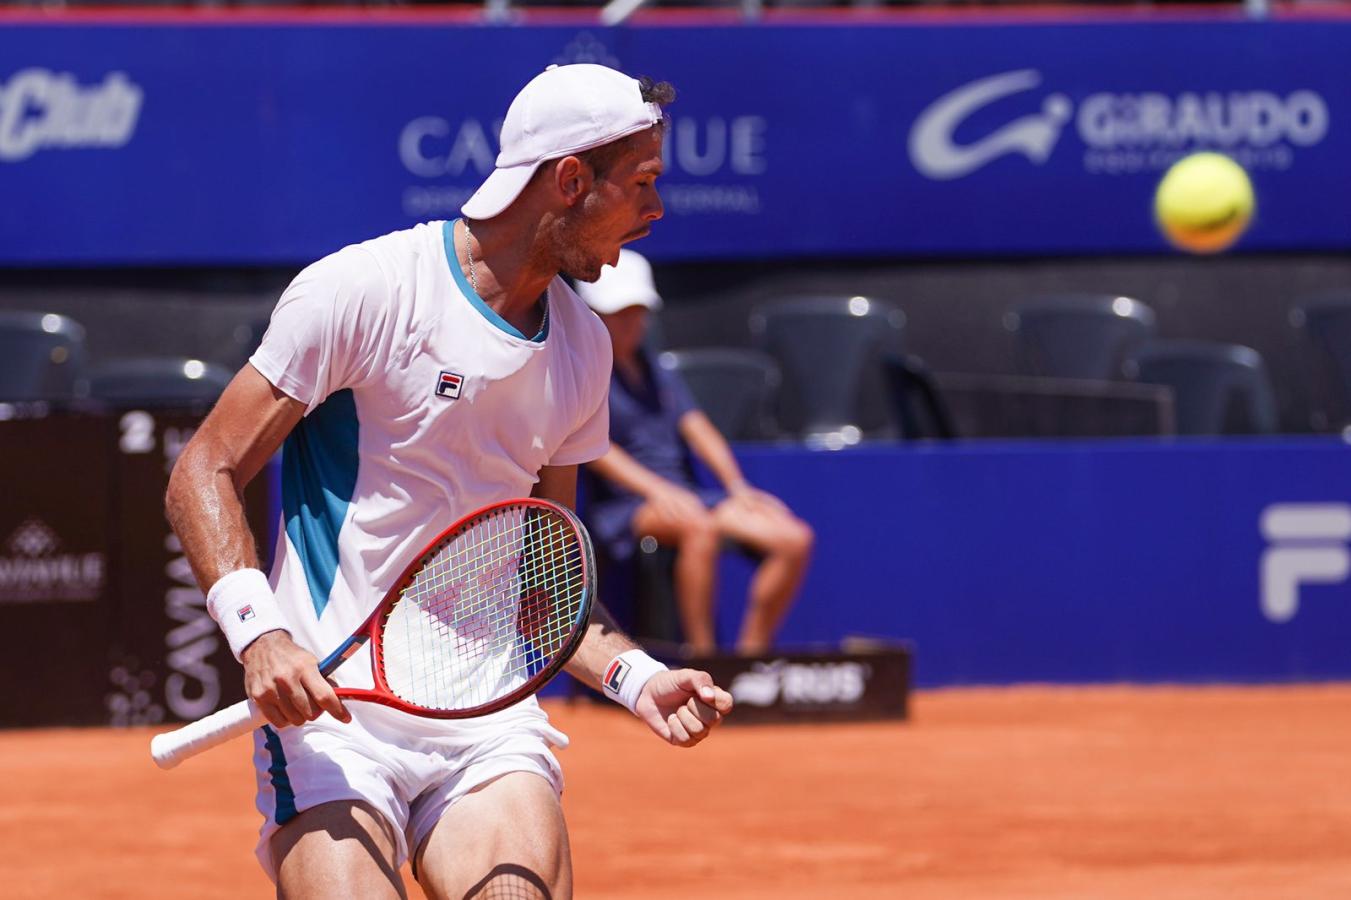 Imagen Ficovich y la alegría por haber conseguido su primera victoria ATP. Imagen: Córdoba Open.